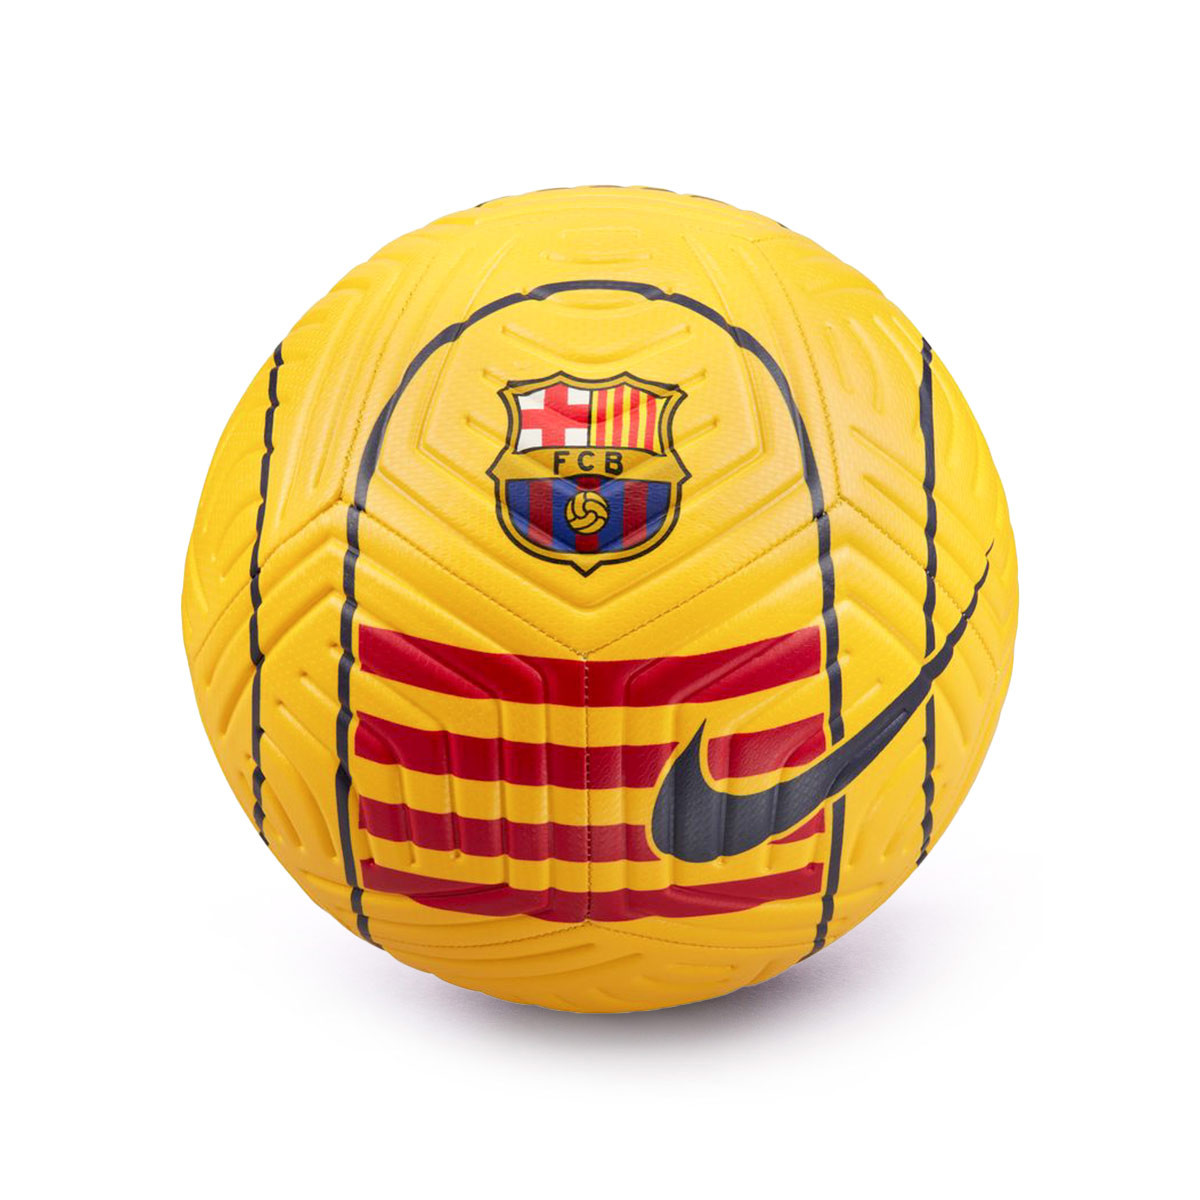 Ballon plastique fc barcelona, jeux exterieurs et sports